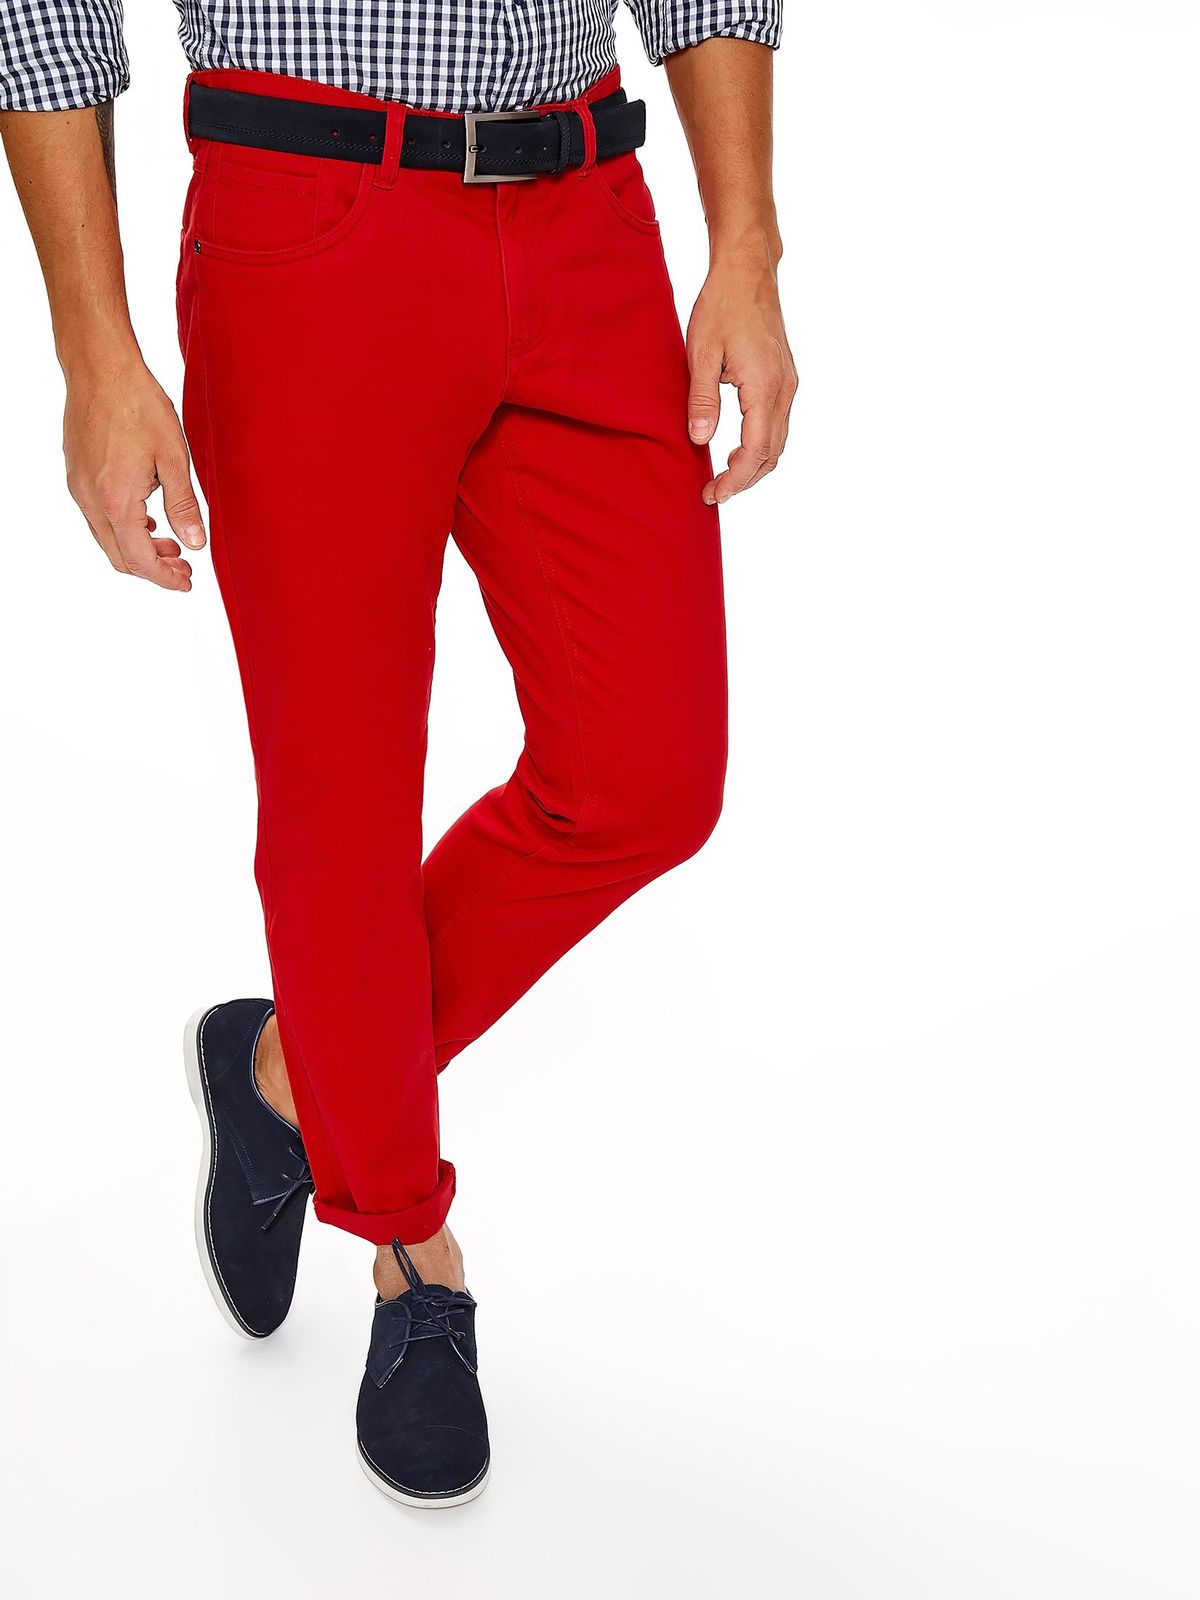 Мужские брюки кирпичного цвета